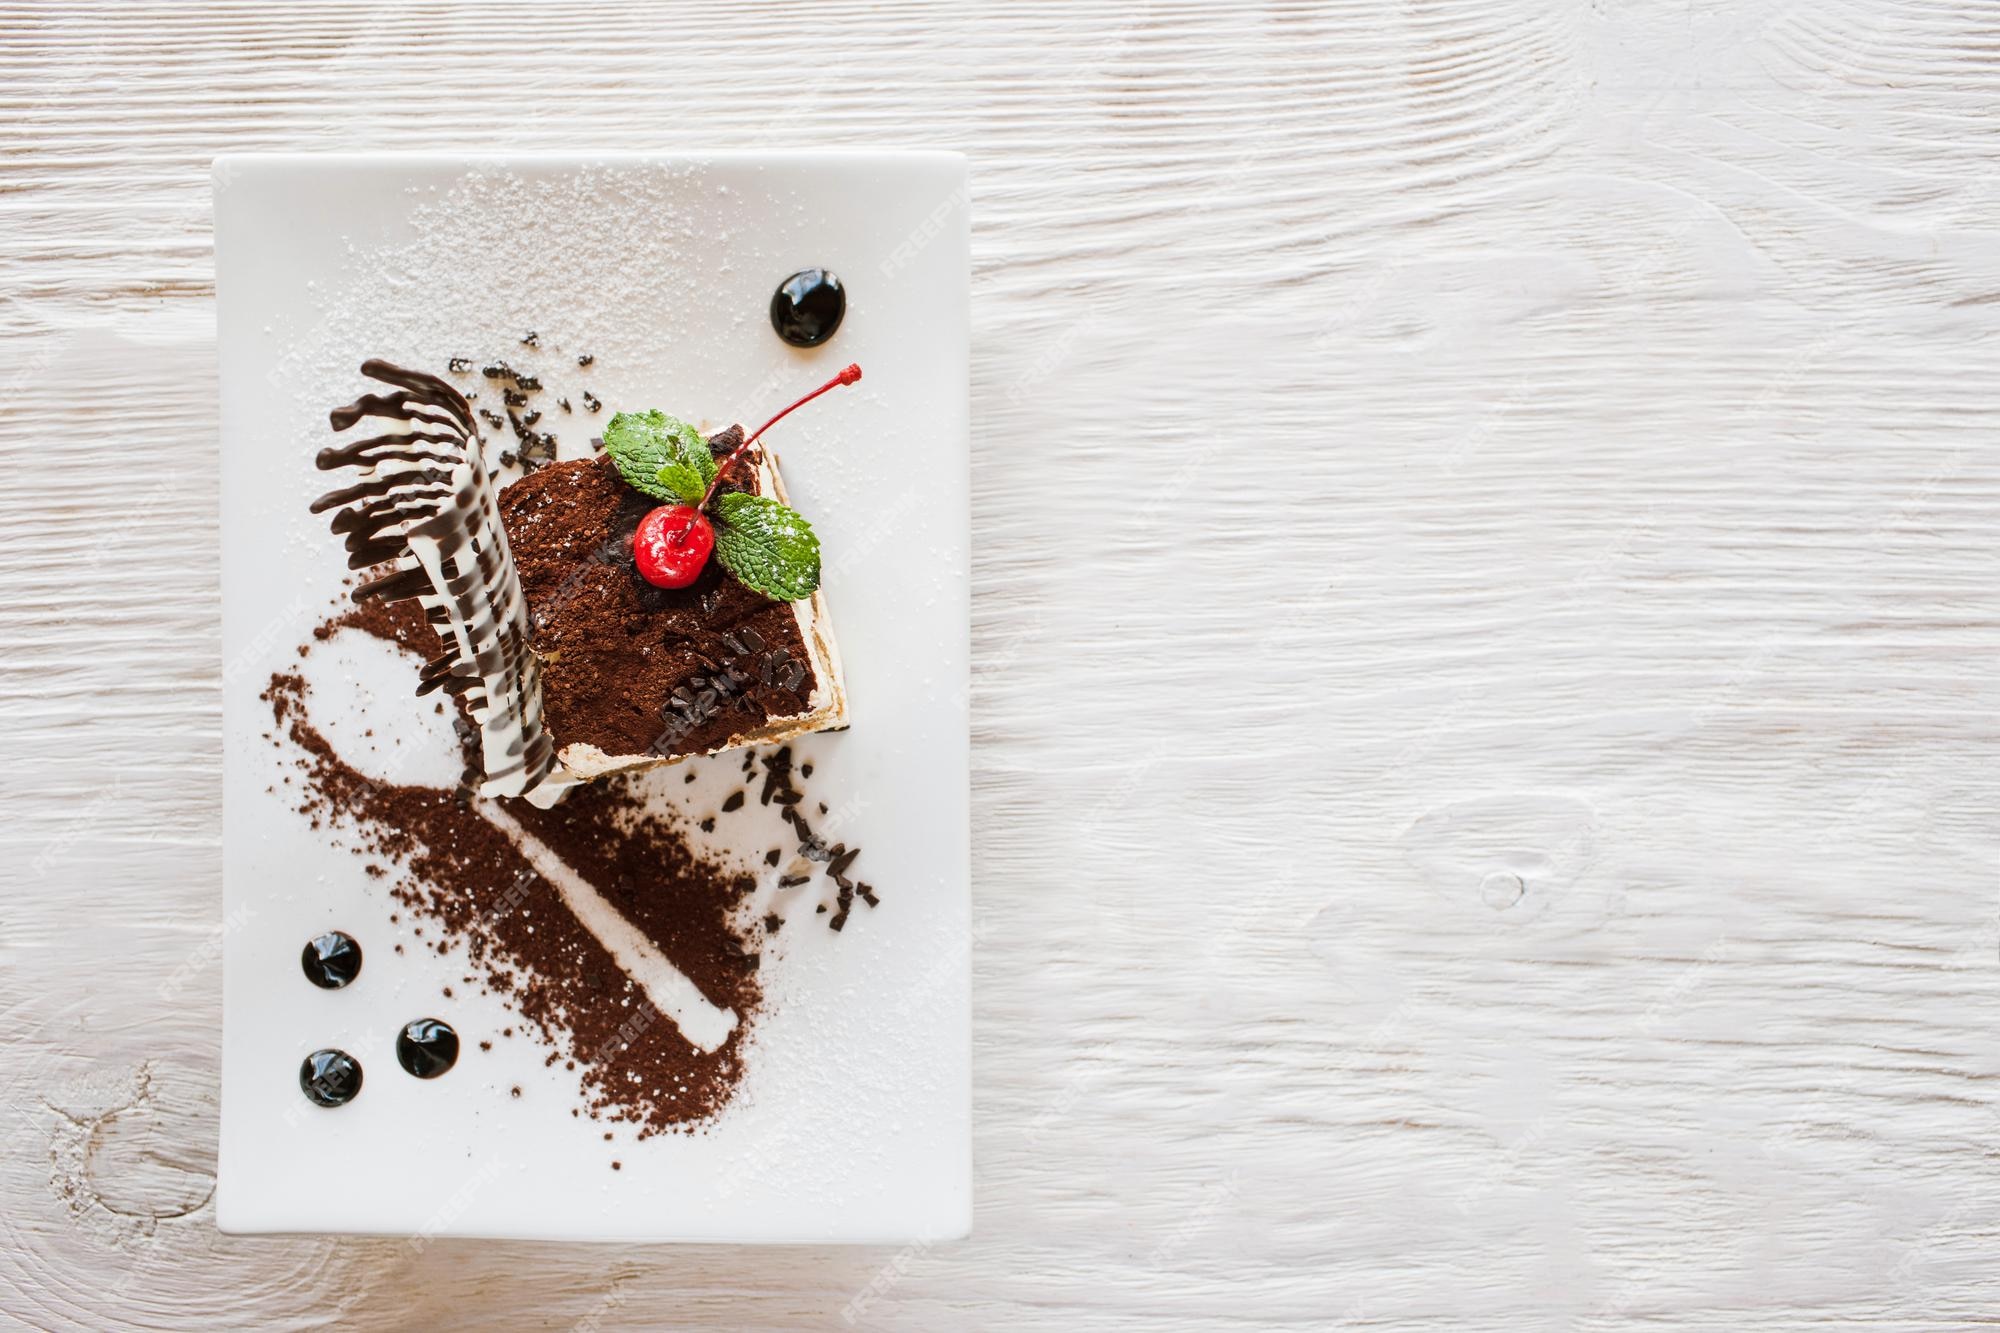 Tiramisú en un plato blanco con decoración de cereza chocolate menta postre dulce que se sirve en restaurante libre cerca de la vista superior | Foto Premium